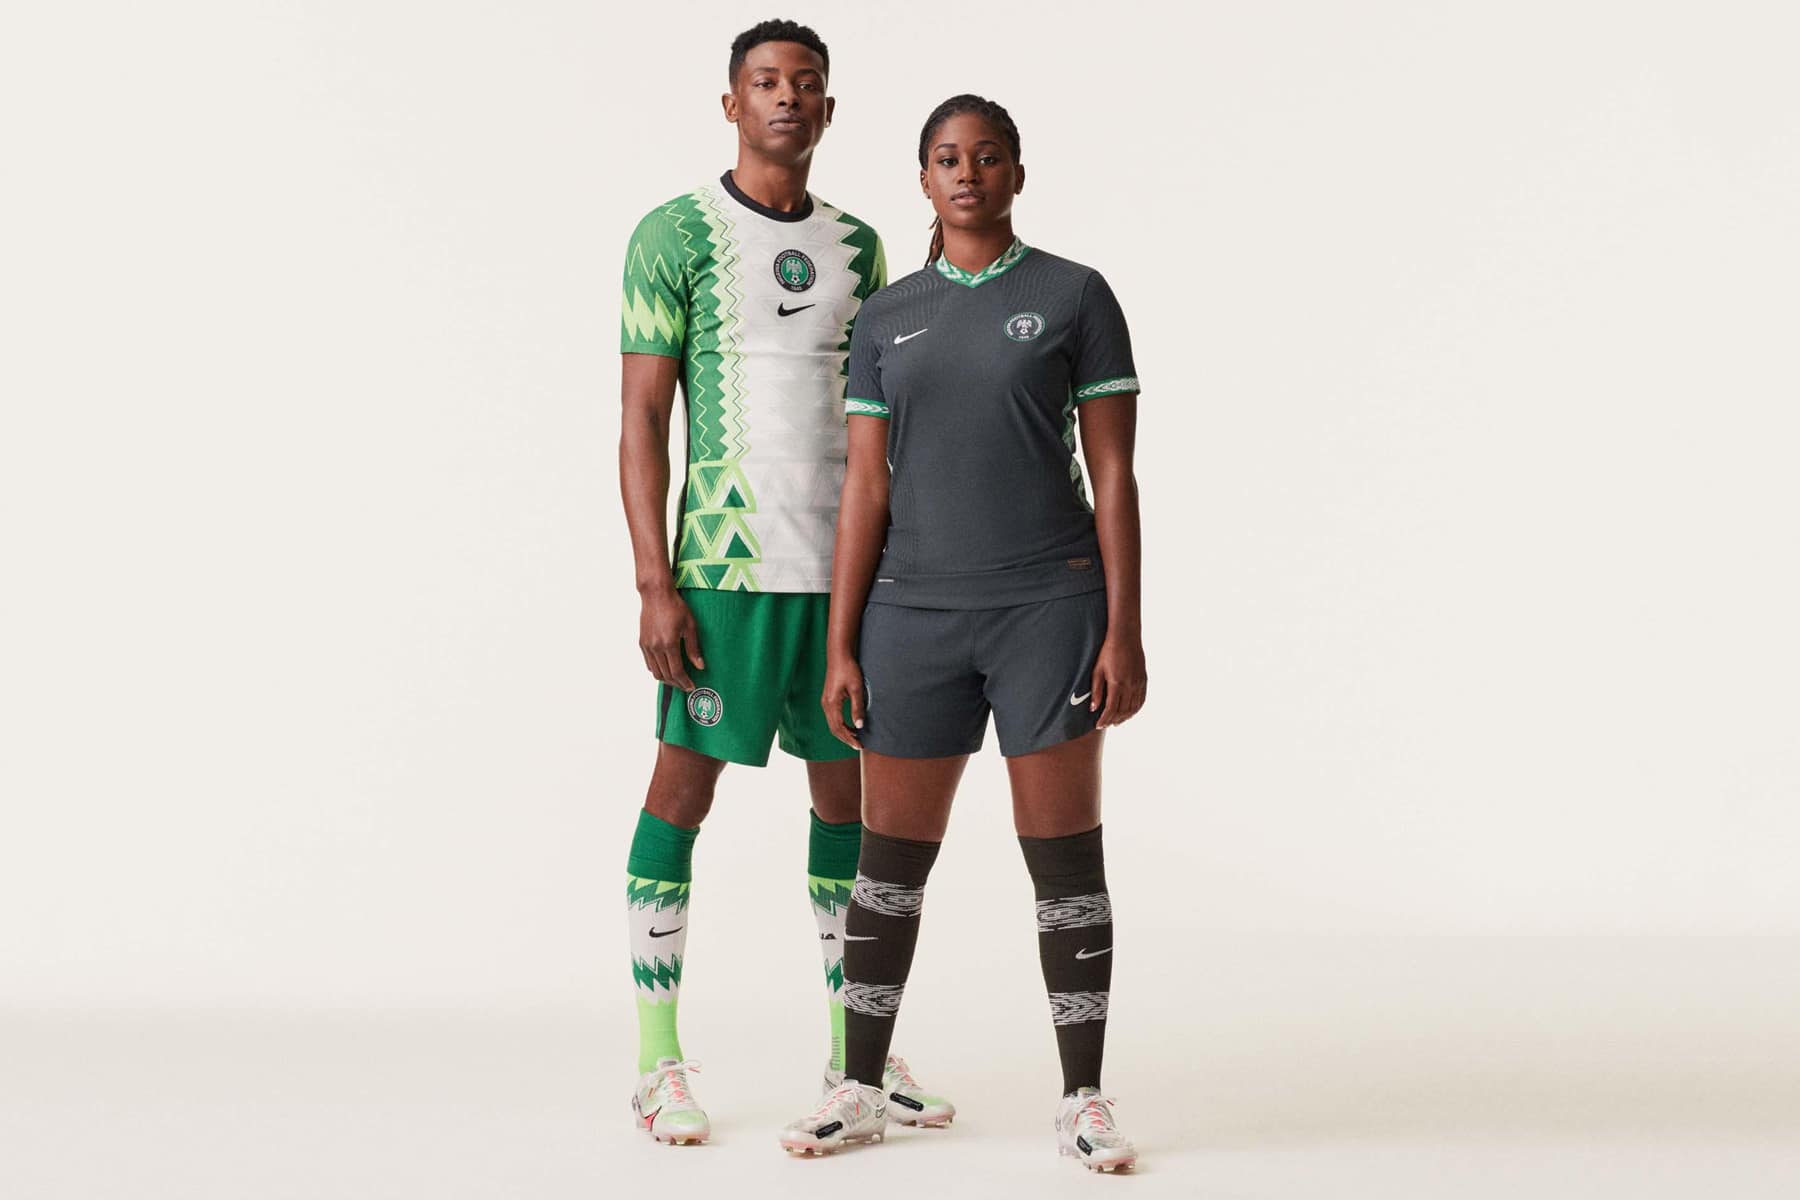 Ontevreden doe niet Stal Nike toont nieuw 2020 voetbalshirt van Nigeria, VS & Zuid-Korea